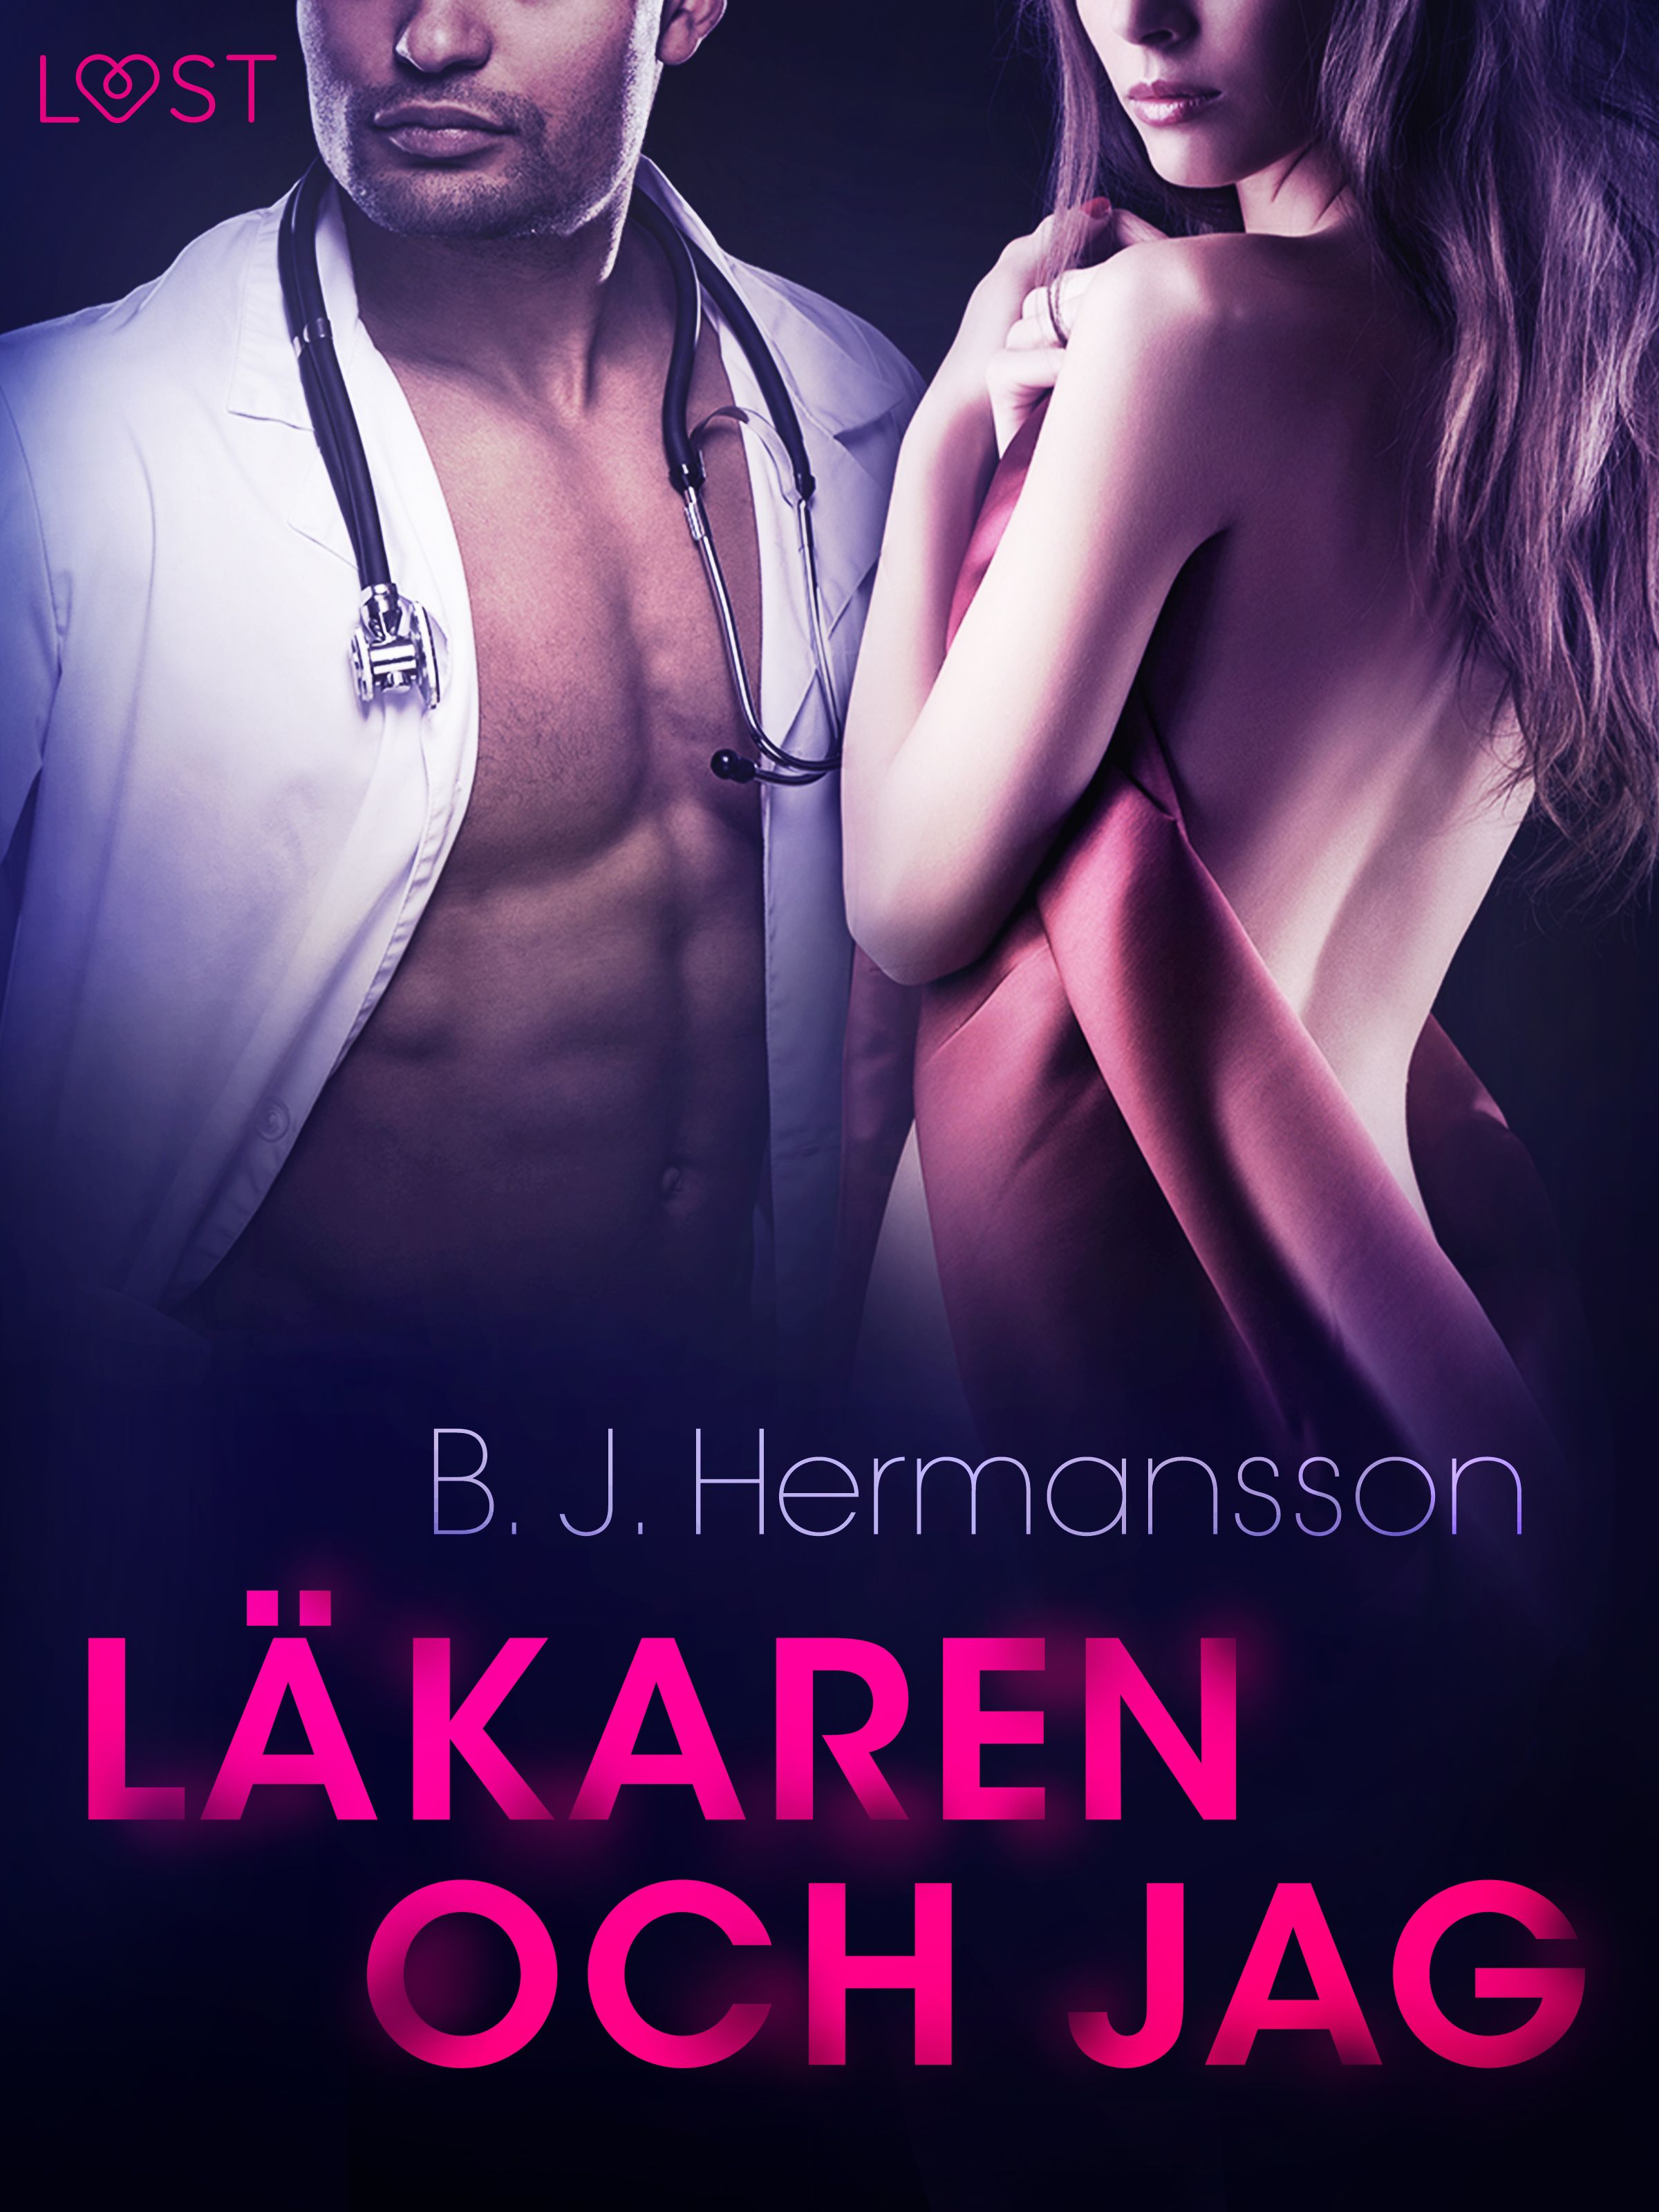 Läkaren och jag - erotisk novell, eBook by B. J. Hermansson